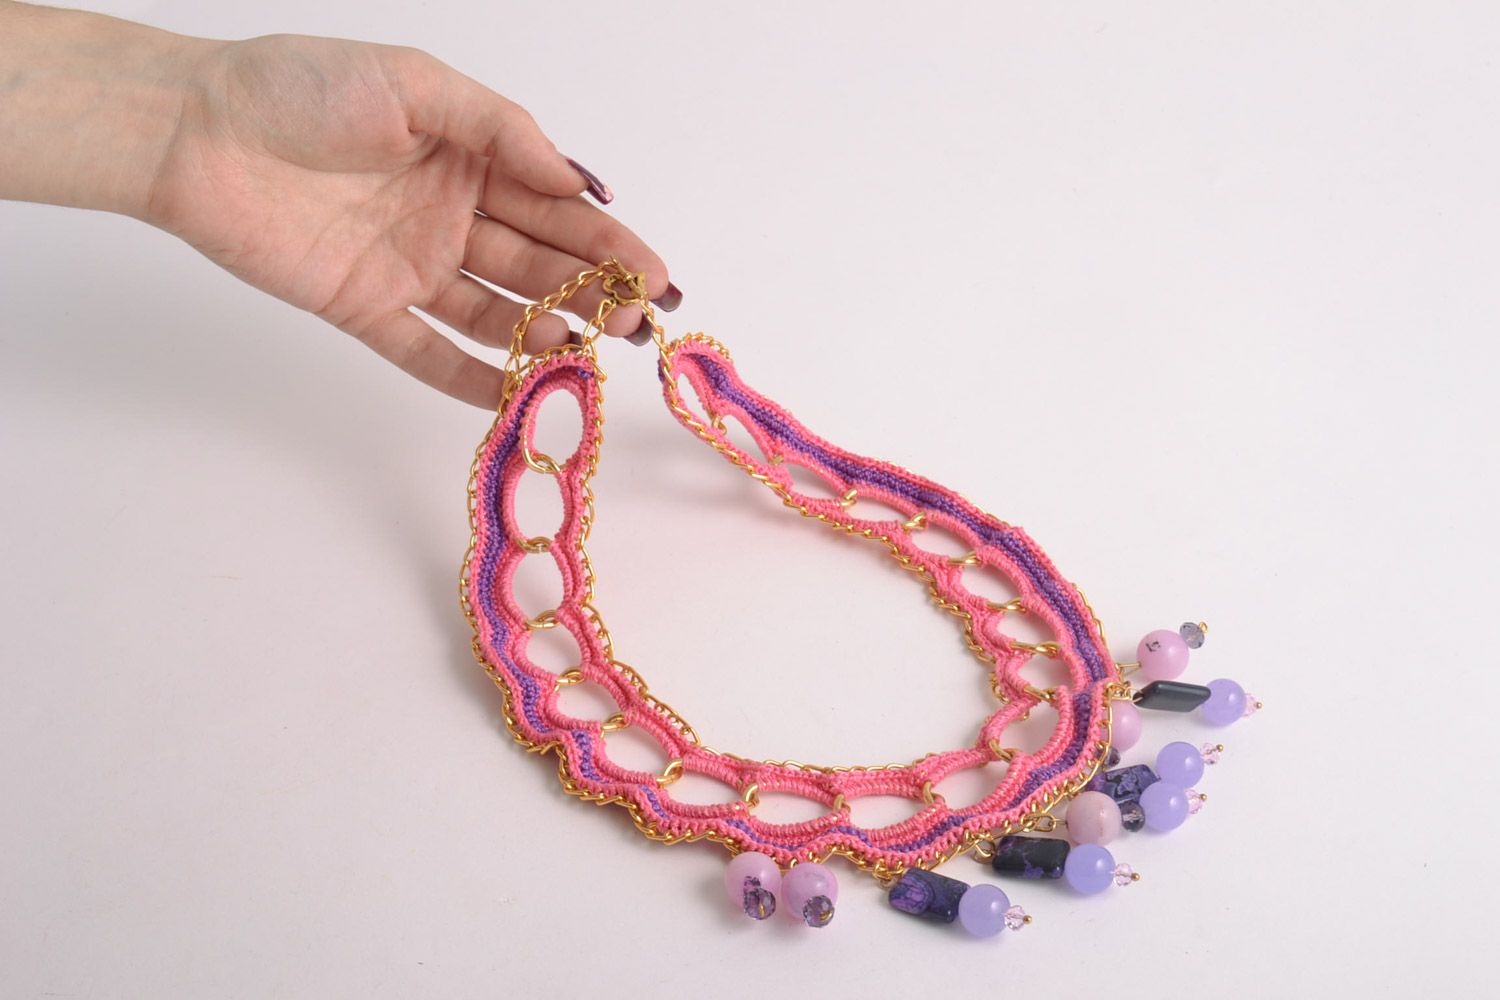 Textil Collier in Rosa aus Baumwollgarnen mit Achat Kristall Handarbeit  foto 2